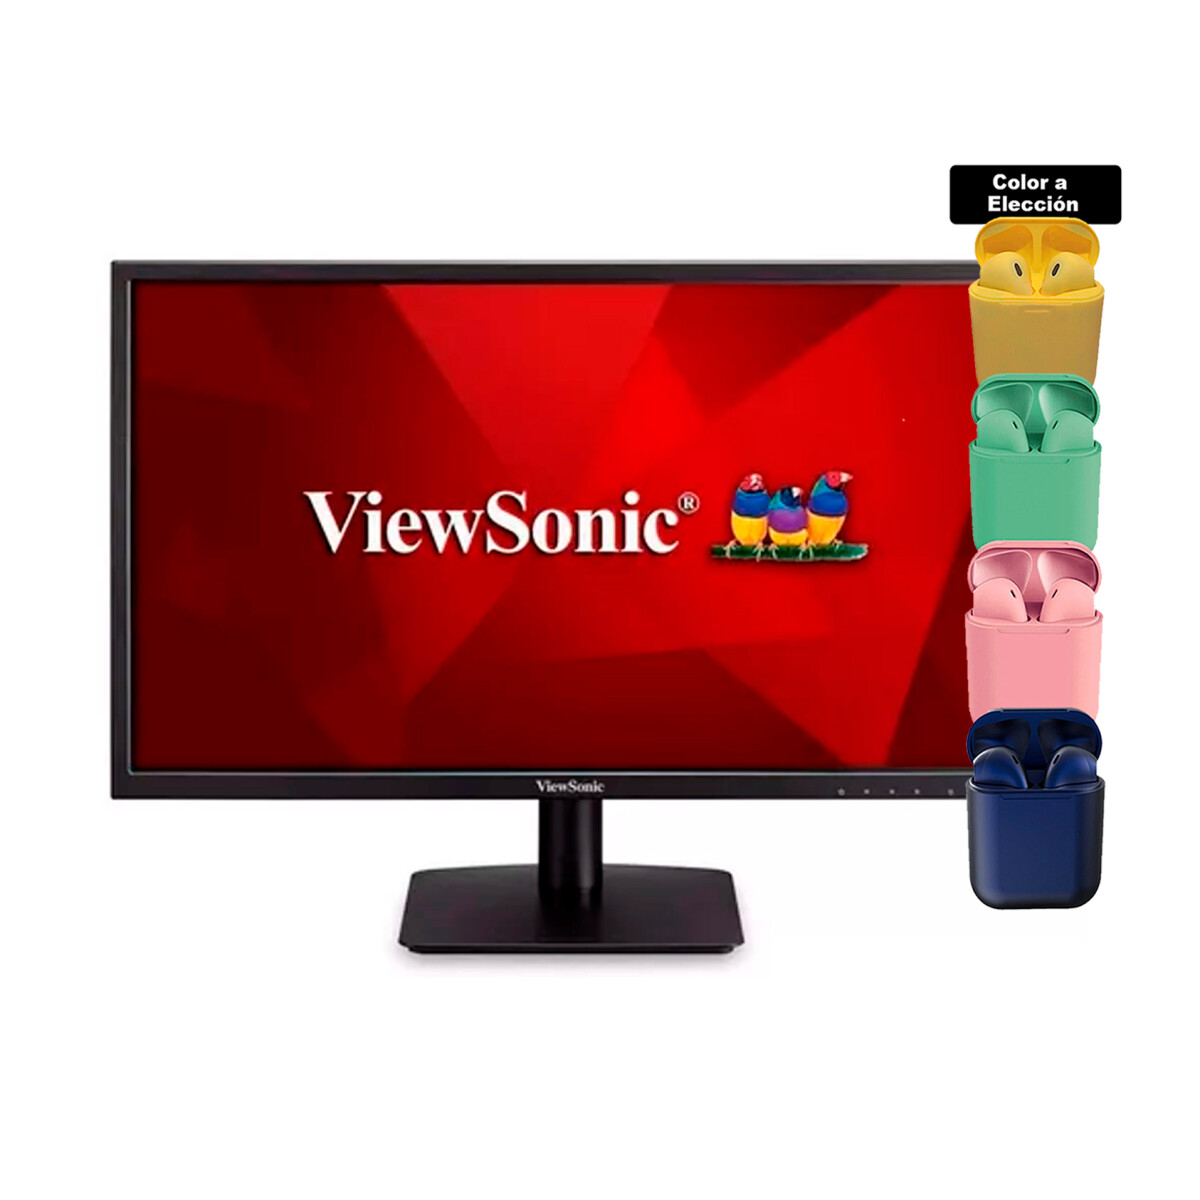 Monitor Viewsonic 24 Led Hdmi Vga Va2405+ Auriculares 